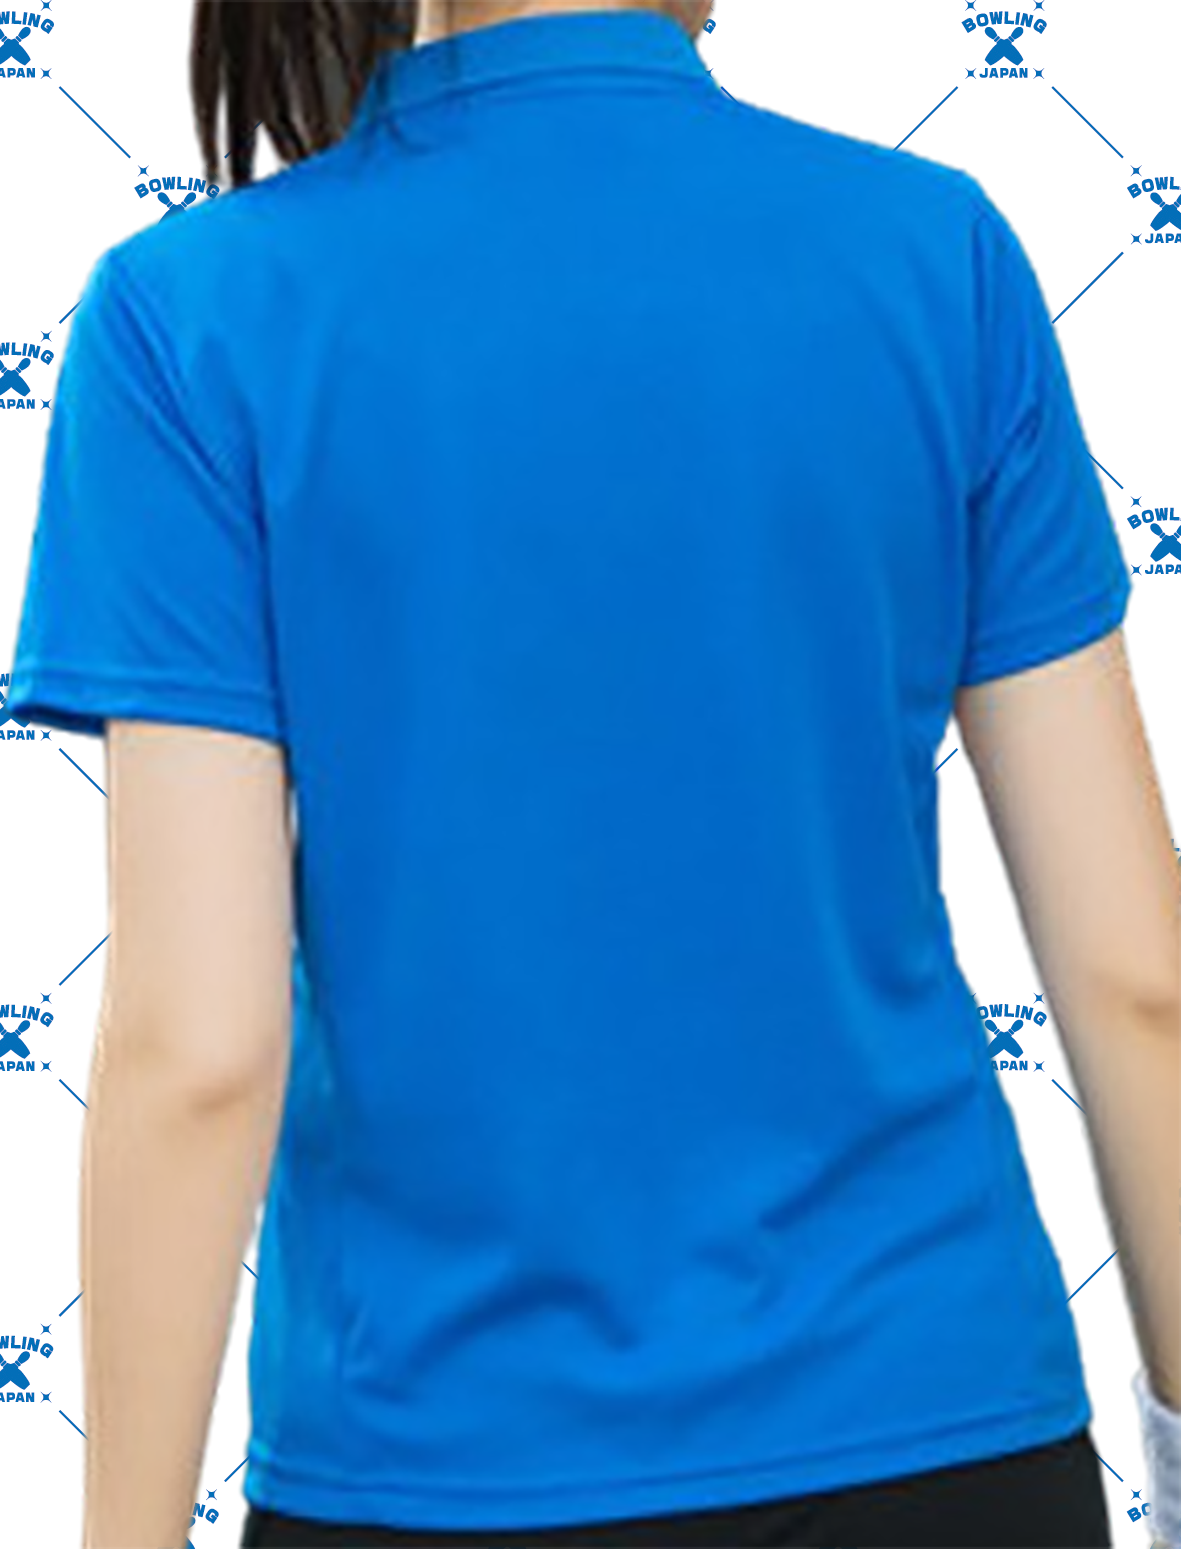 BOWLING-JAPANデザインポロシャツ5655-271024、(ポリエステル100%)全２色-11サイズ、納期１〜２週間、送料無料画像